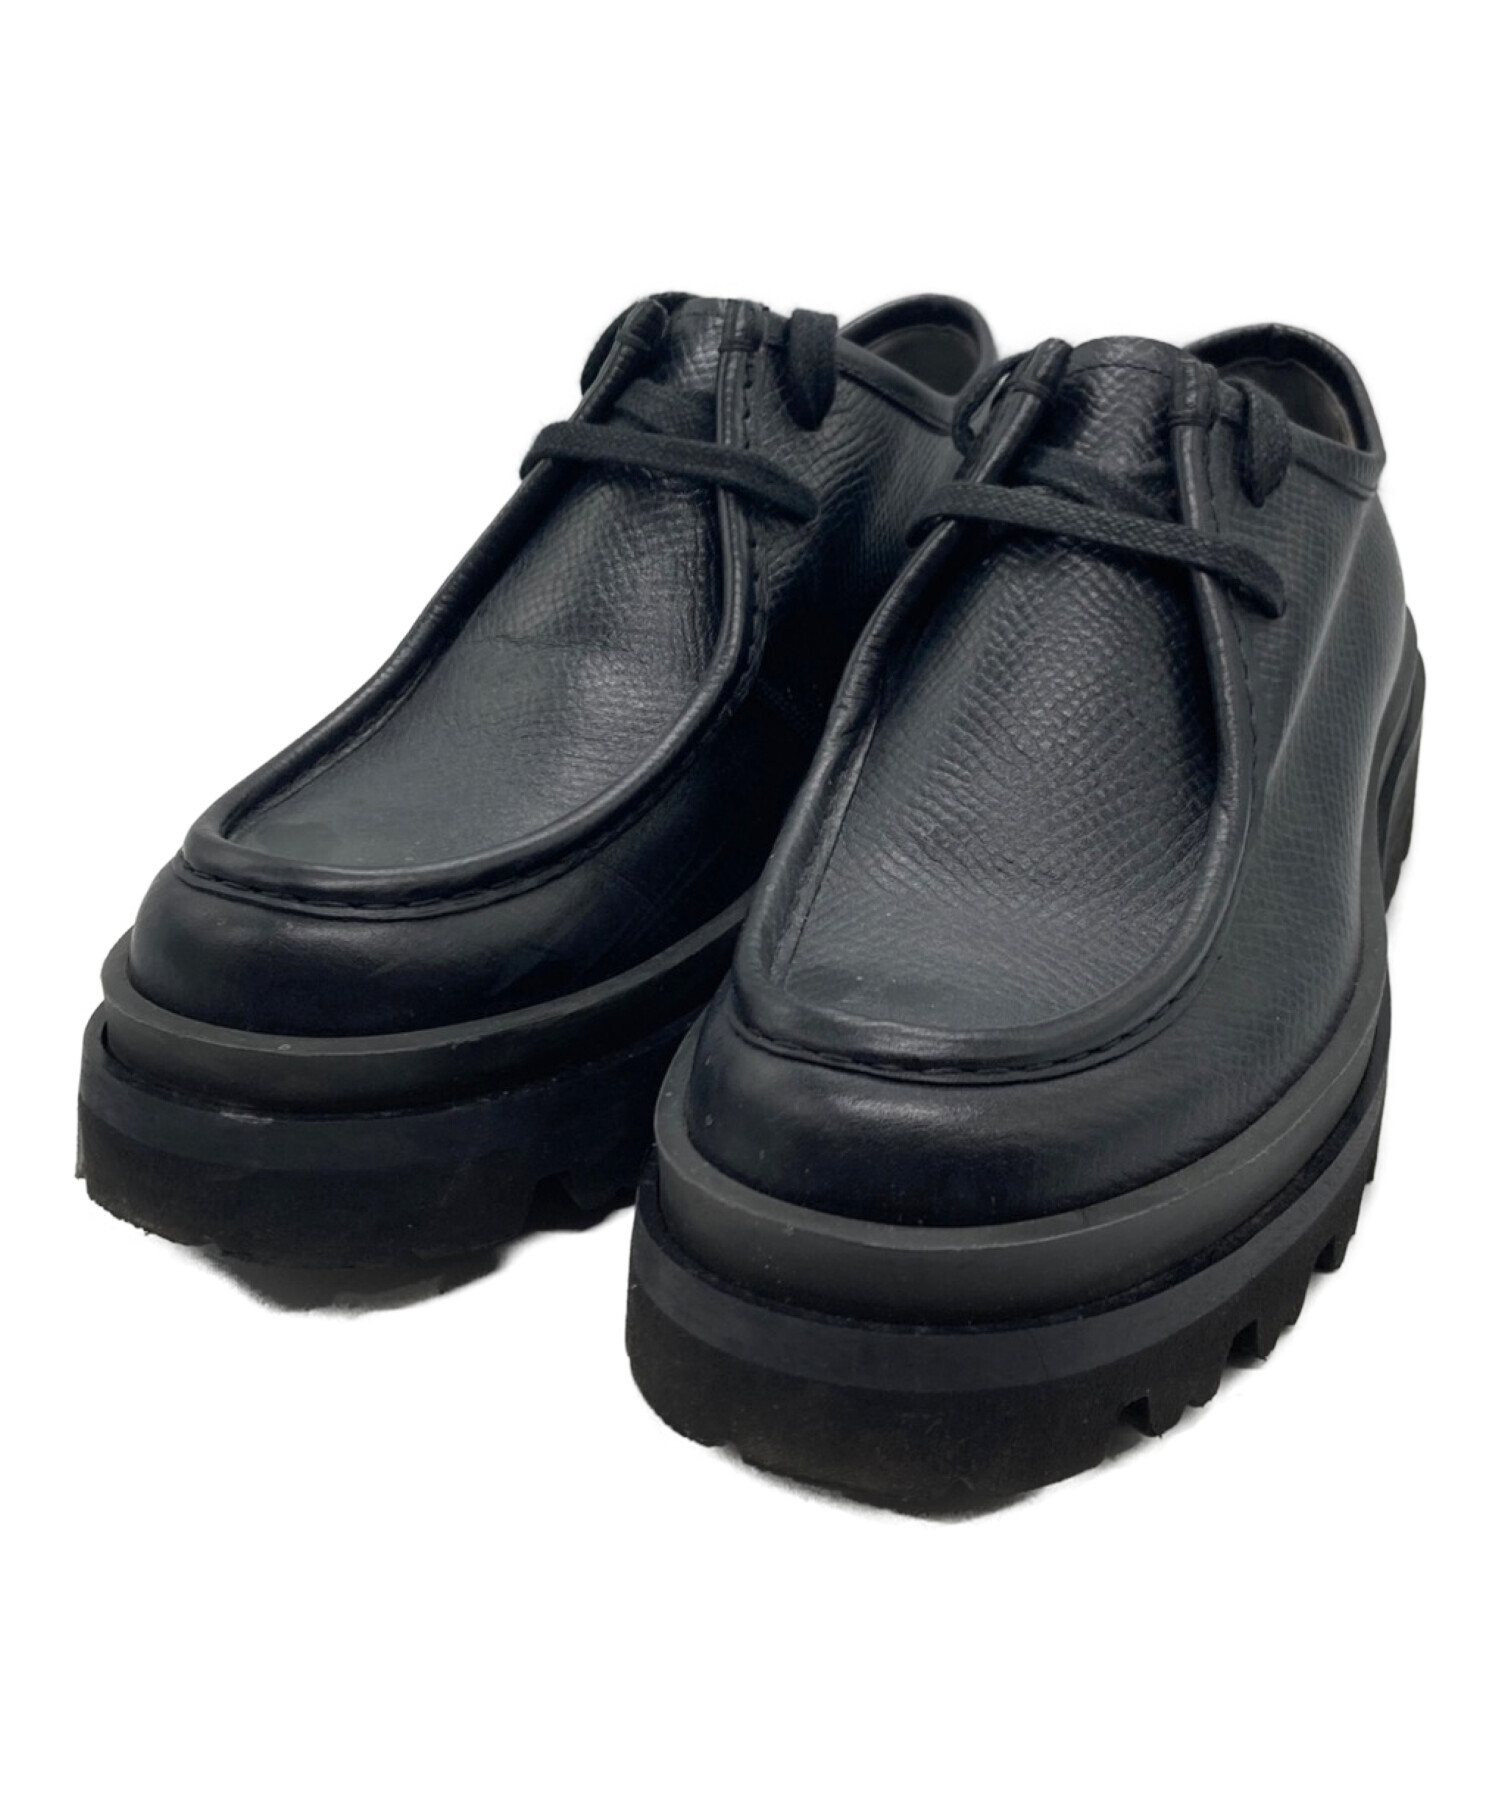 sergio rossi (セルジオロッシ) ブーツ ブラック サイズ:7